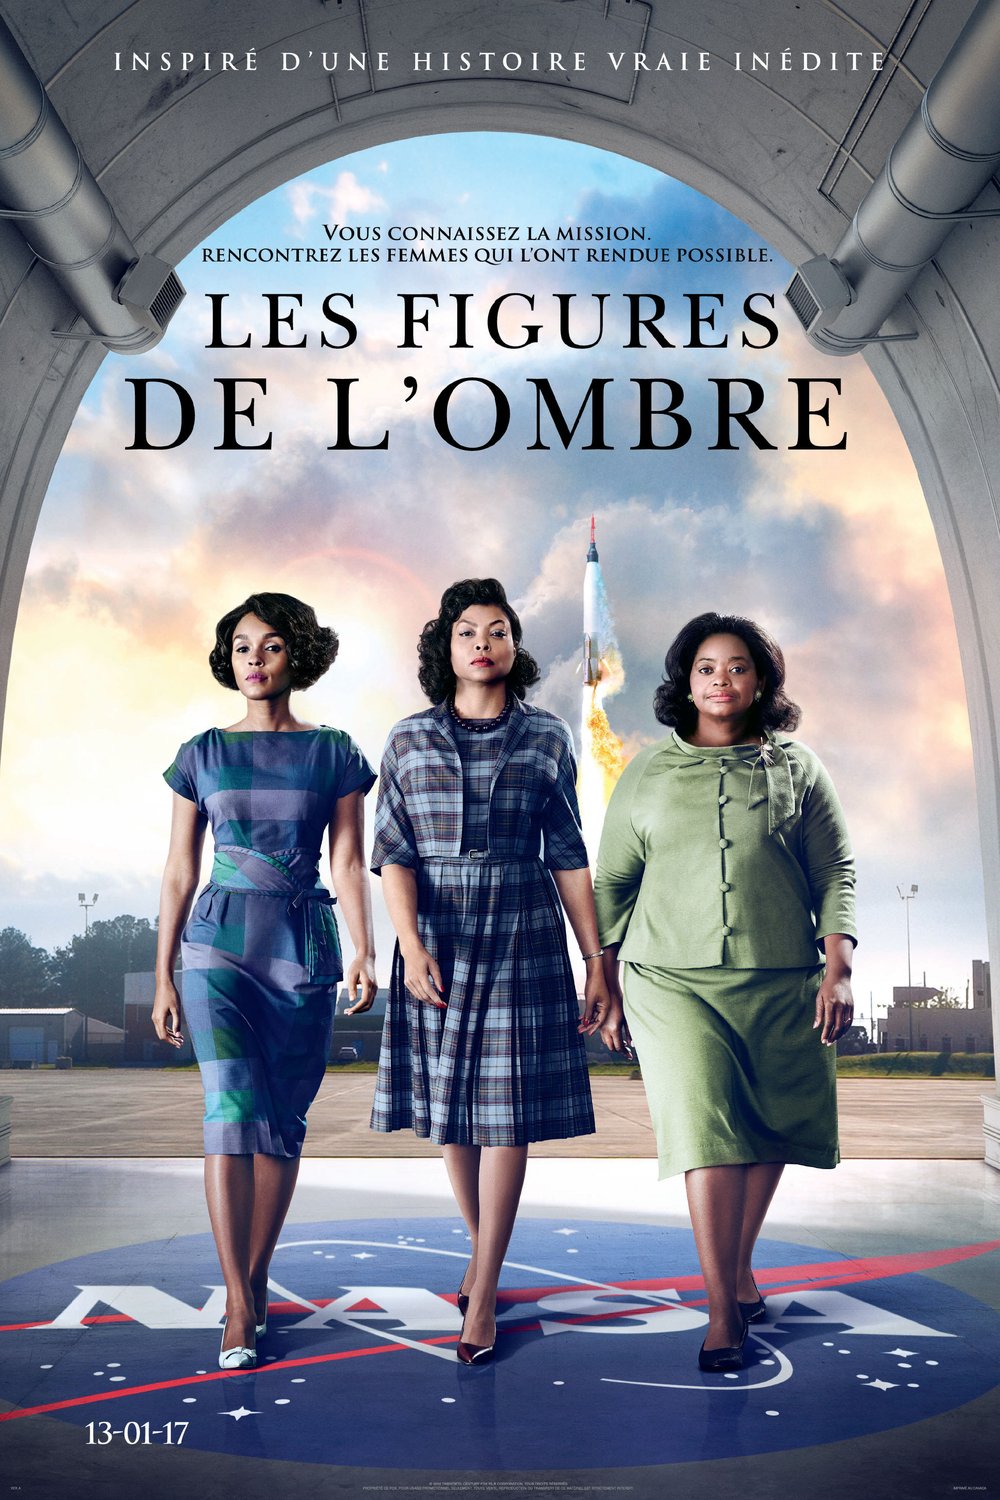 Poster of the movie Les Figures de l'ombre